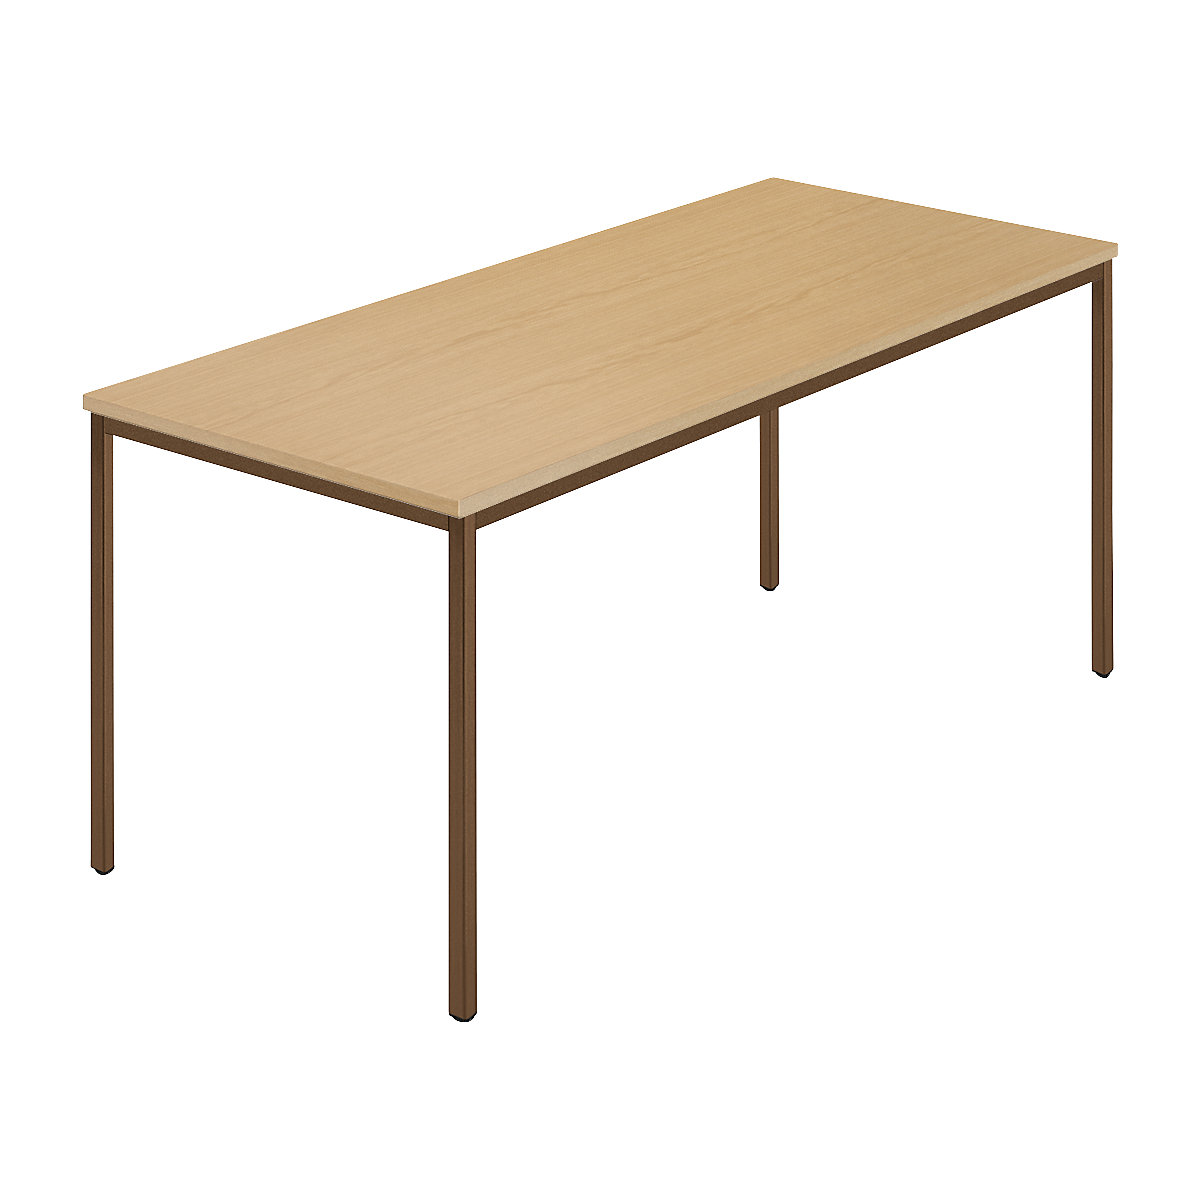 Pravokutni stol, presvučena četverokutna cijev, ŠxD 1600 x 800 mm, prirodna bukva / u smeđoj boji-6